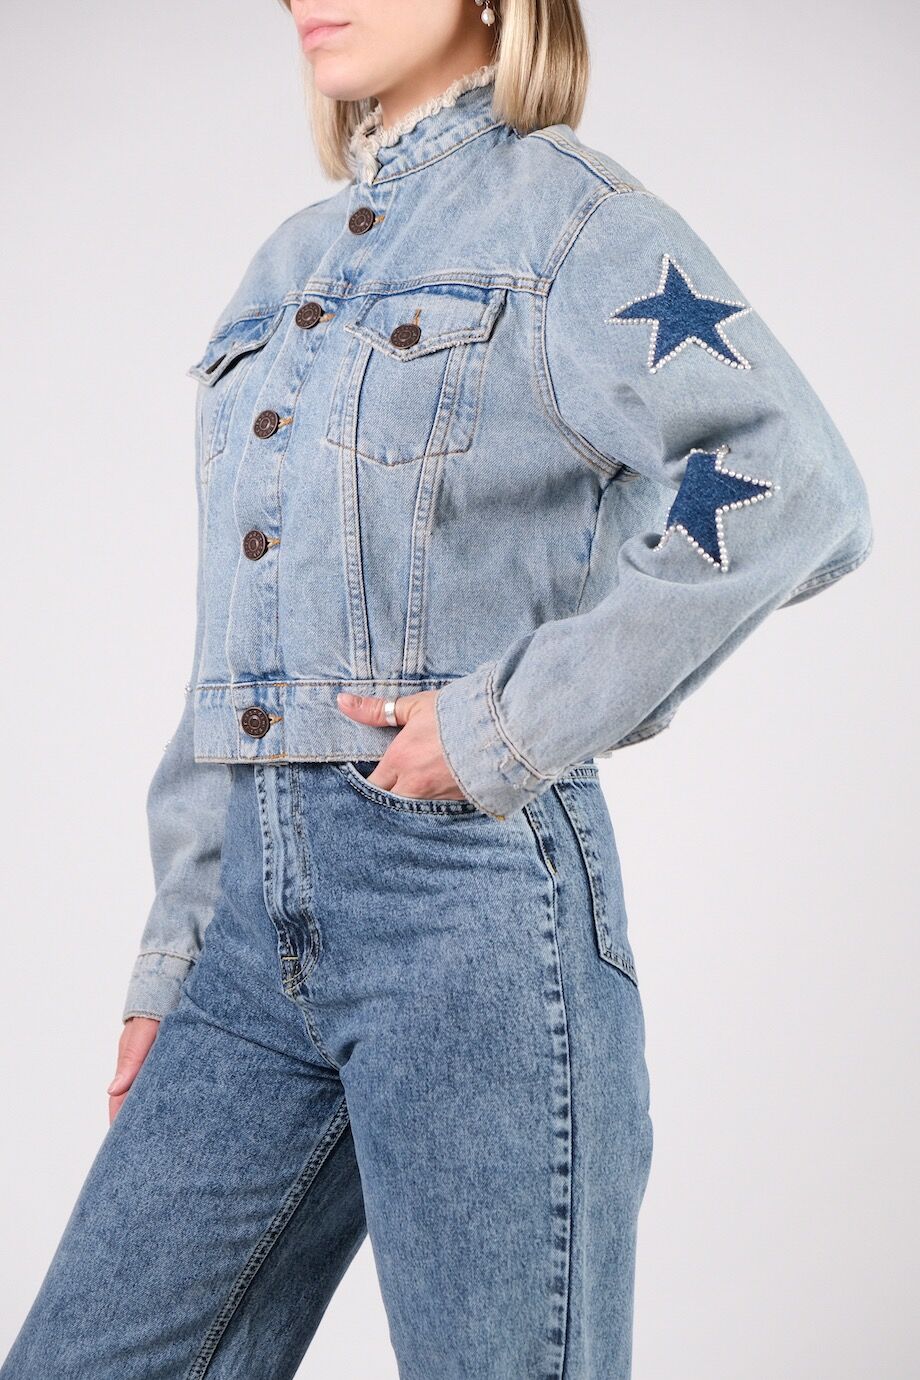 image 2 Джинсовая куртка голубого цвета со звездами на рукавах